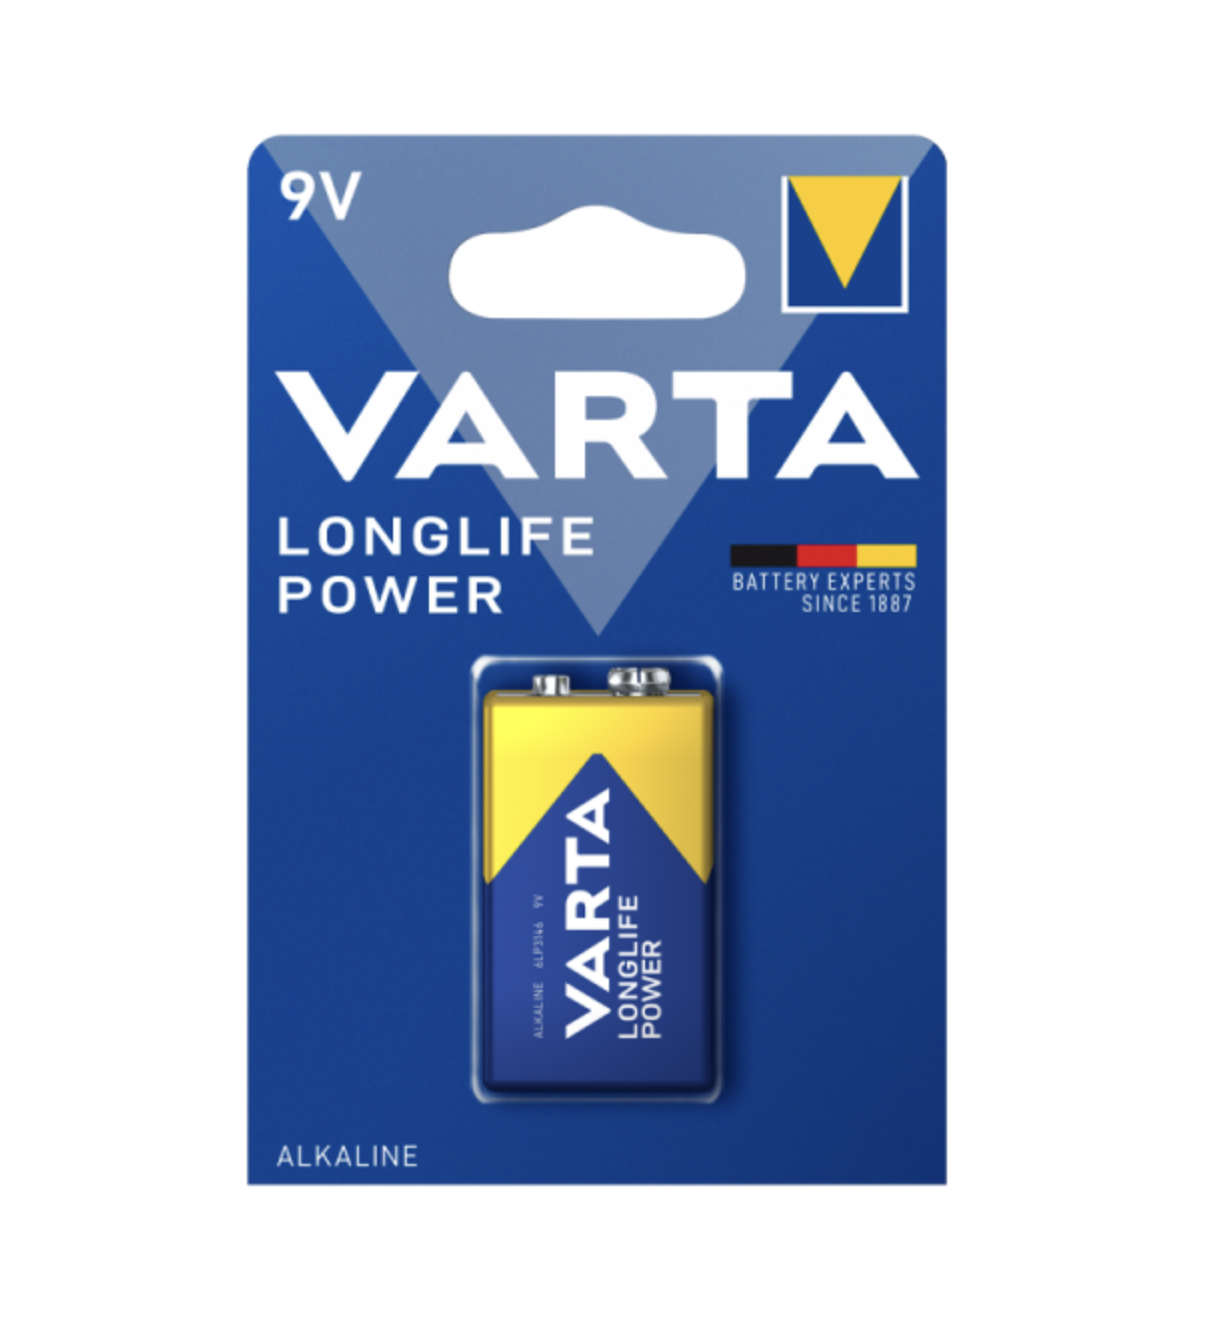   / Varta -  Longlife Power Alkaline High Energy E-Block 9V 6LP3146, 1 